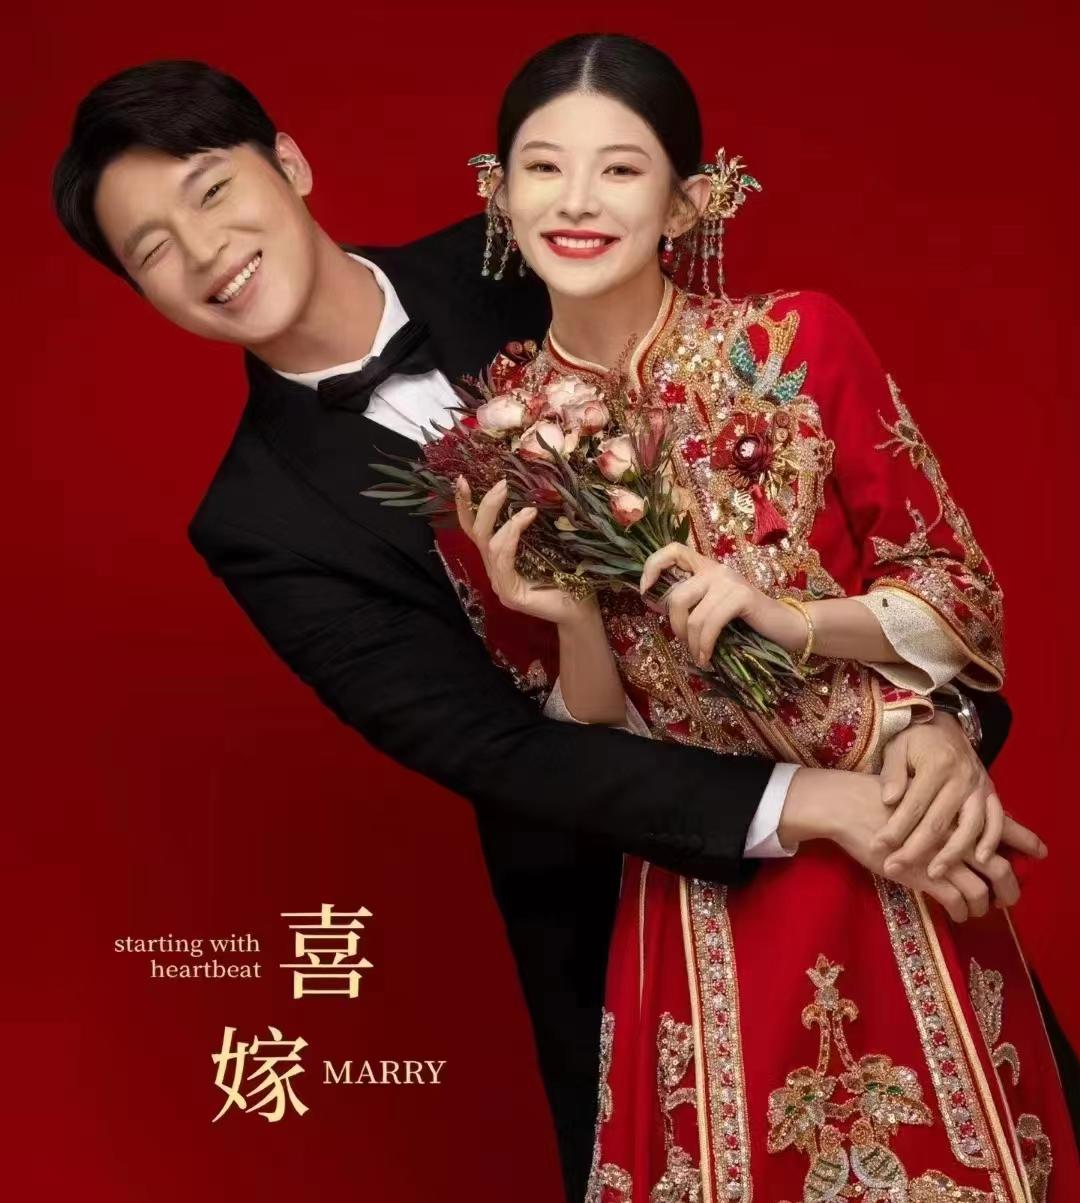 新春特价 | 父母喜爱的中式喜嫁婚纱照